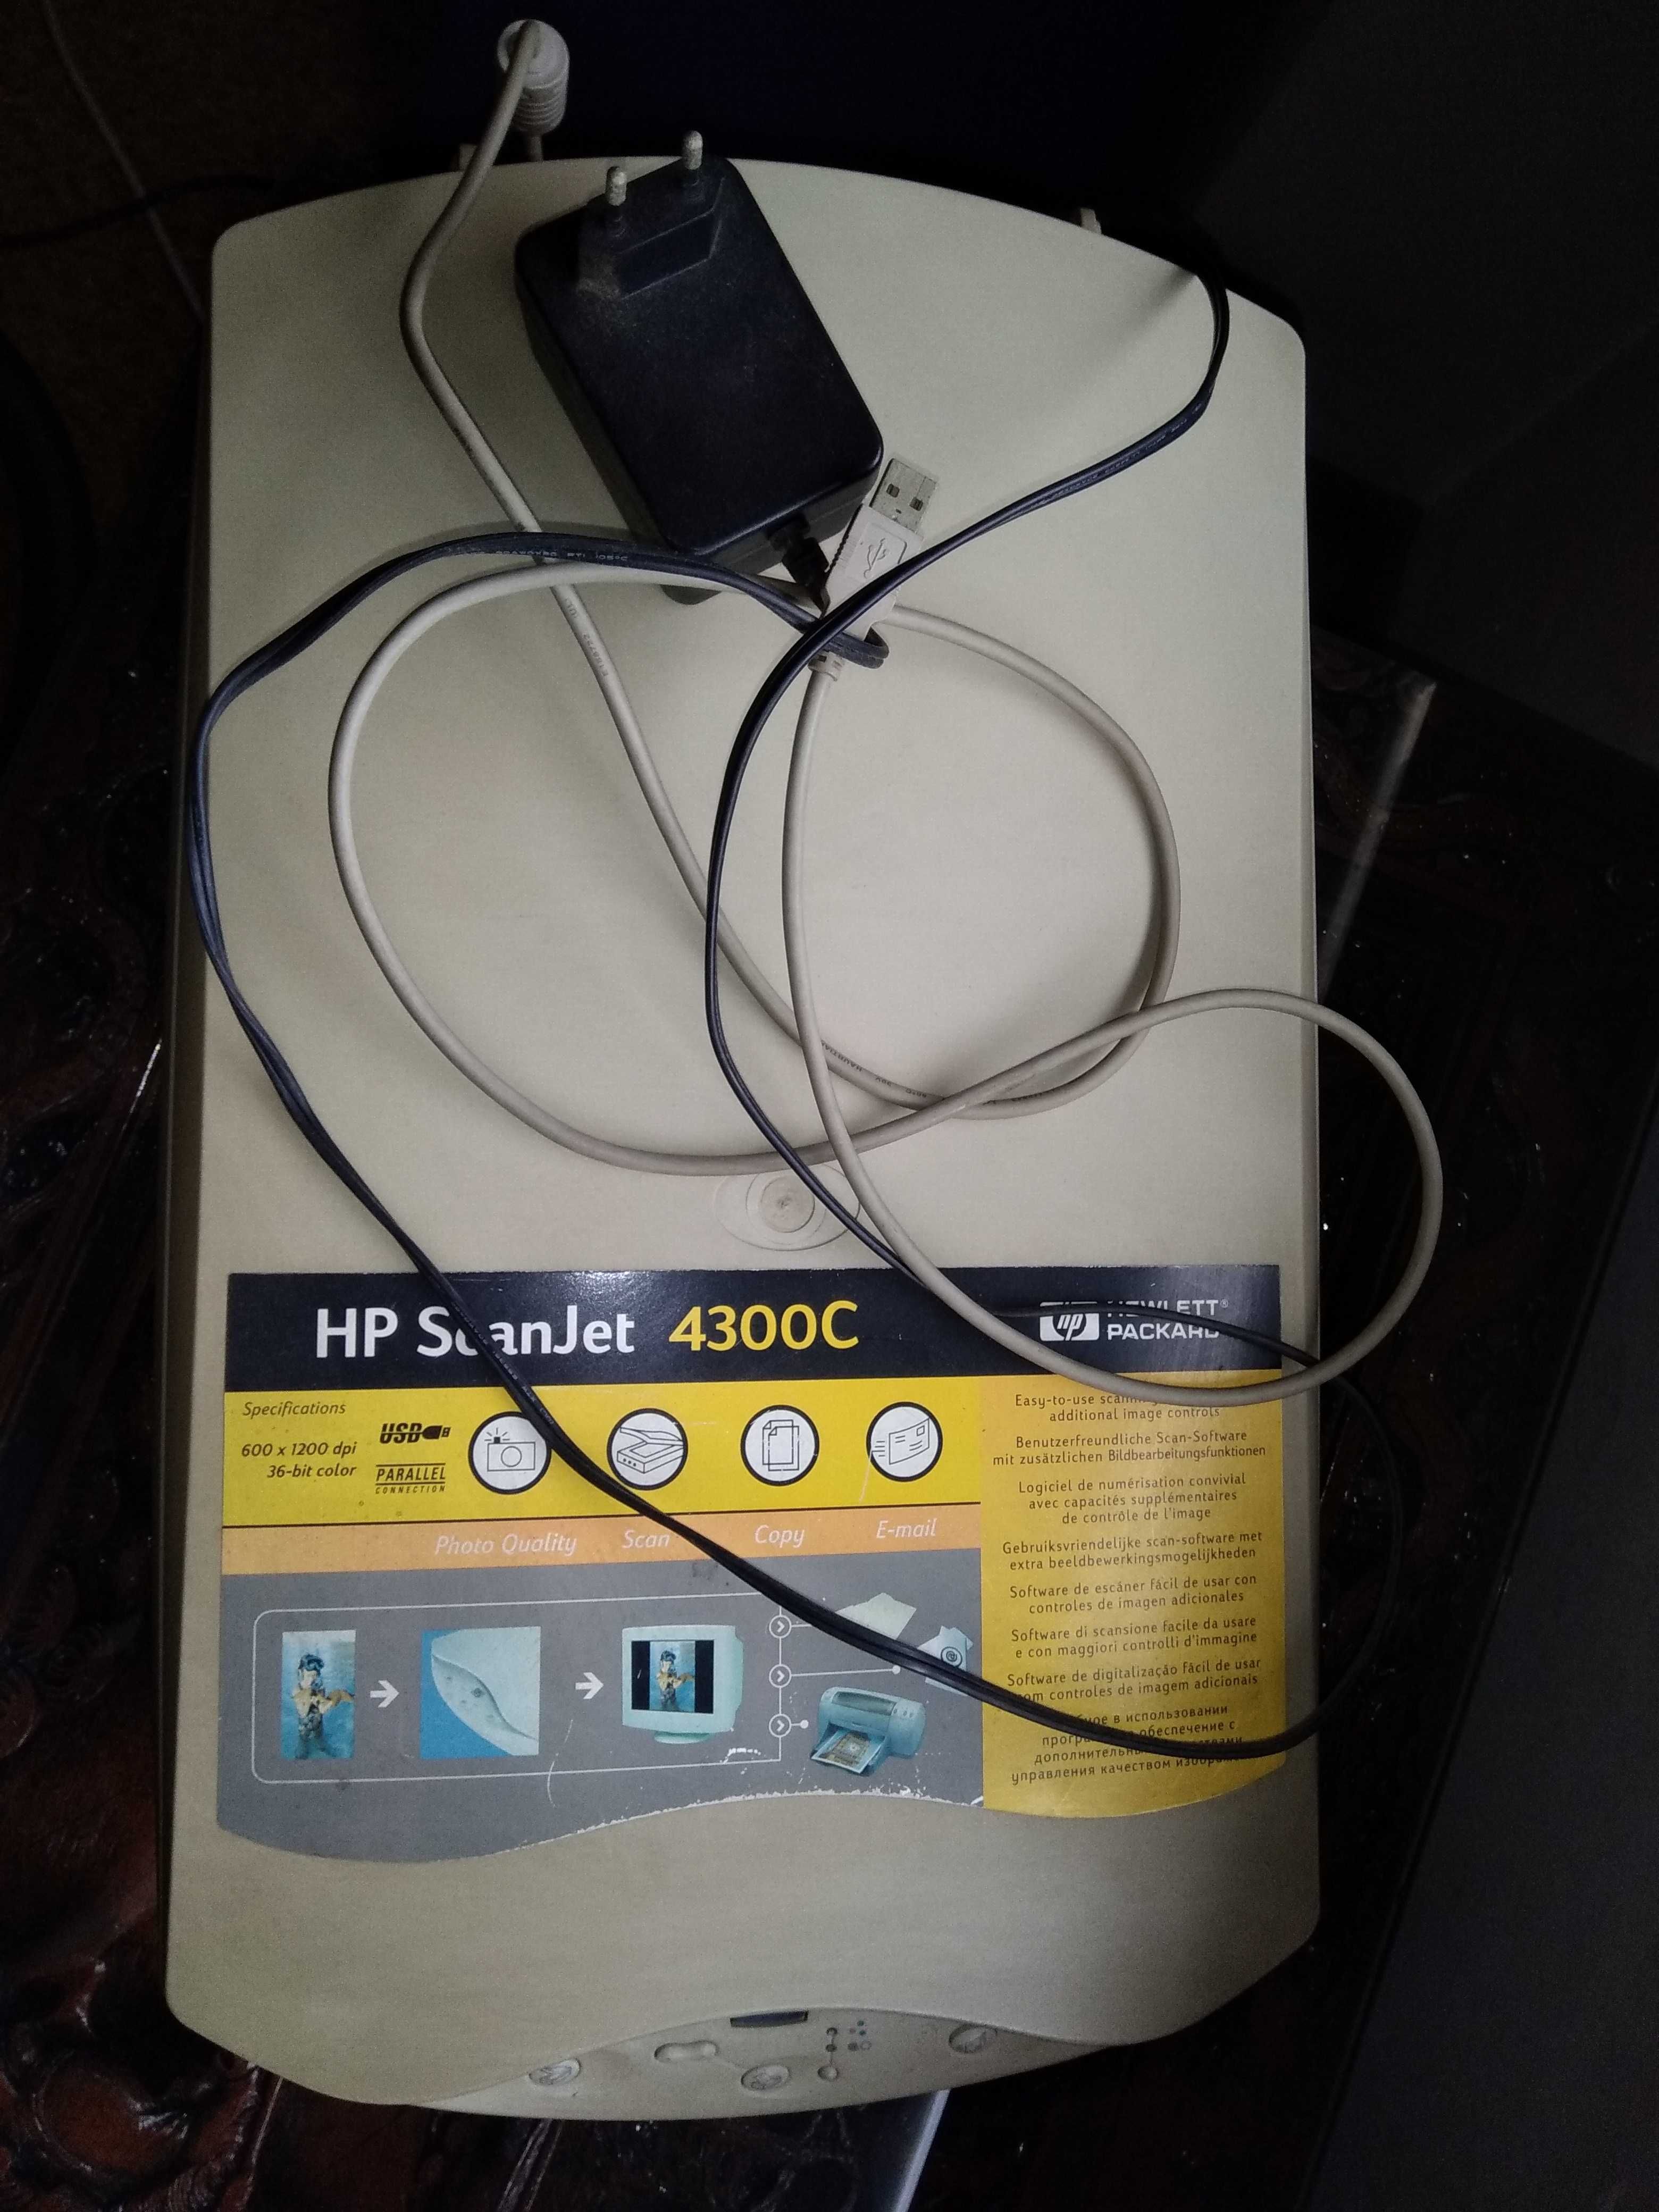 HP ScanJet 4300C - Scanner - Hewlett-Packard